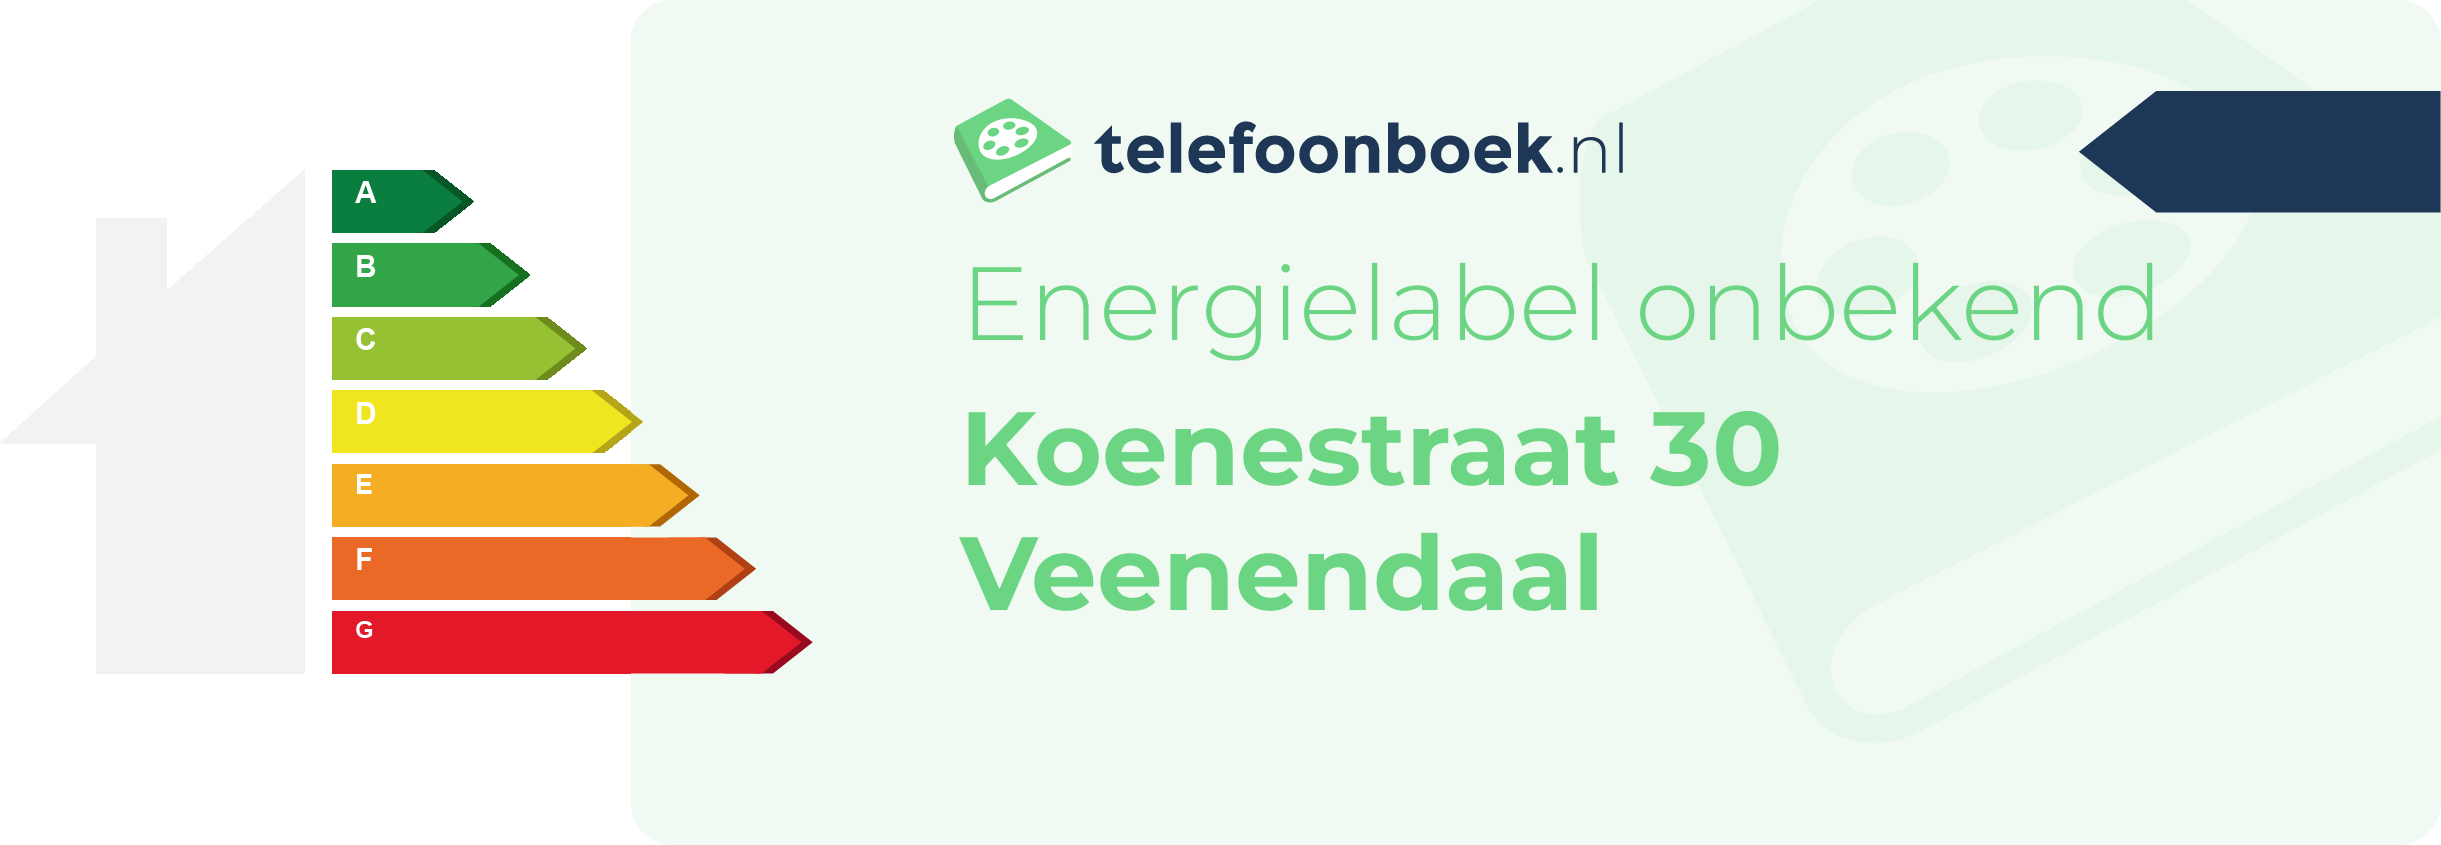 Energielabel Koenestraat 30 Veenendaal